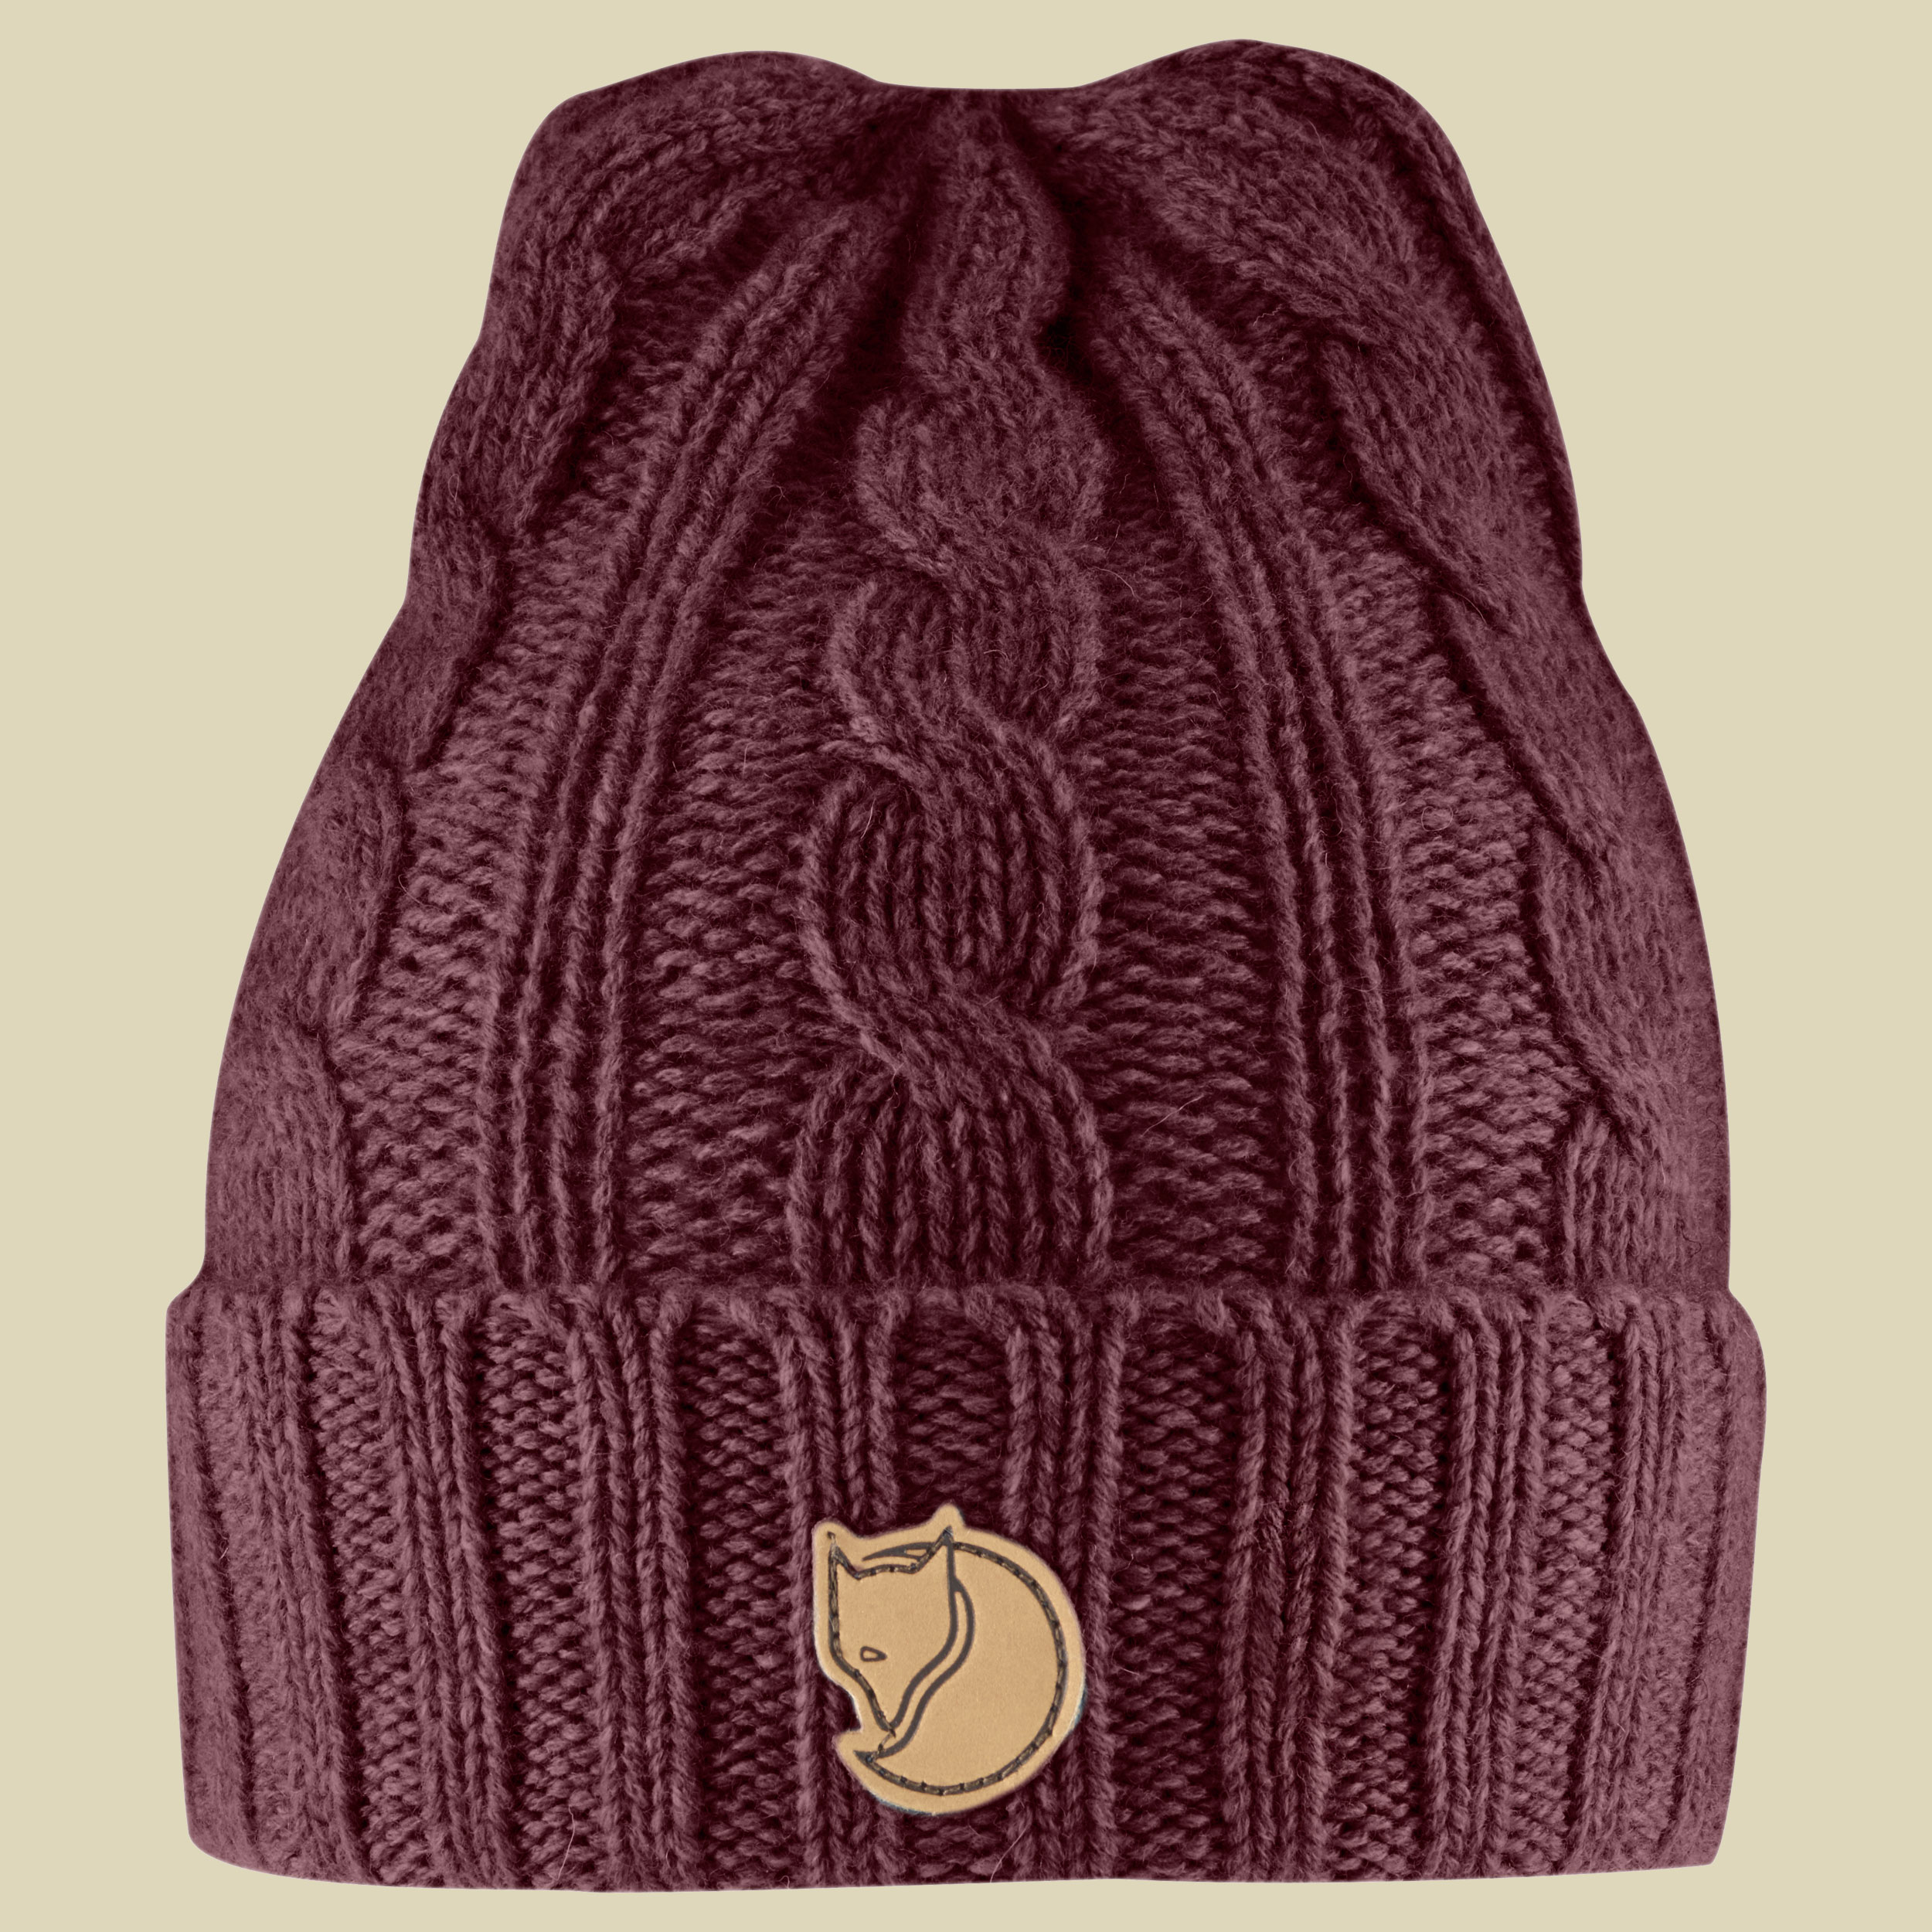 Braided Knit Hat Größe one size Farbe dark garnet